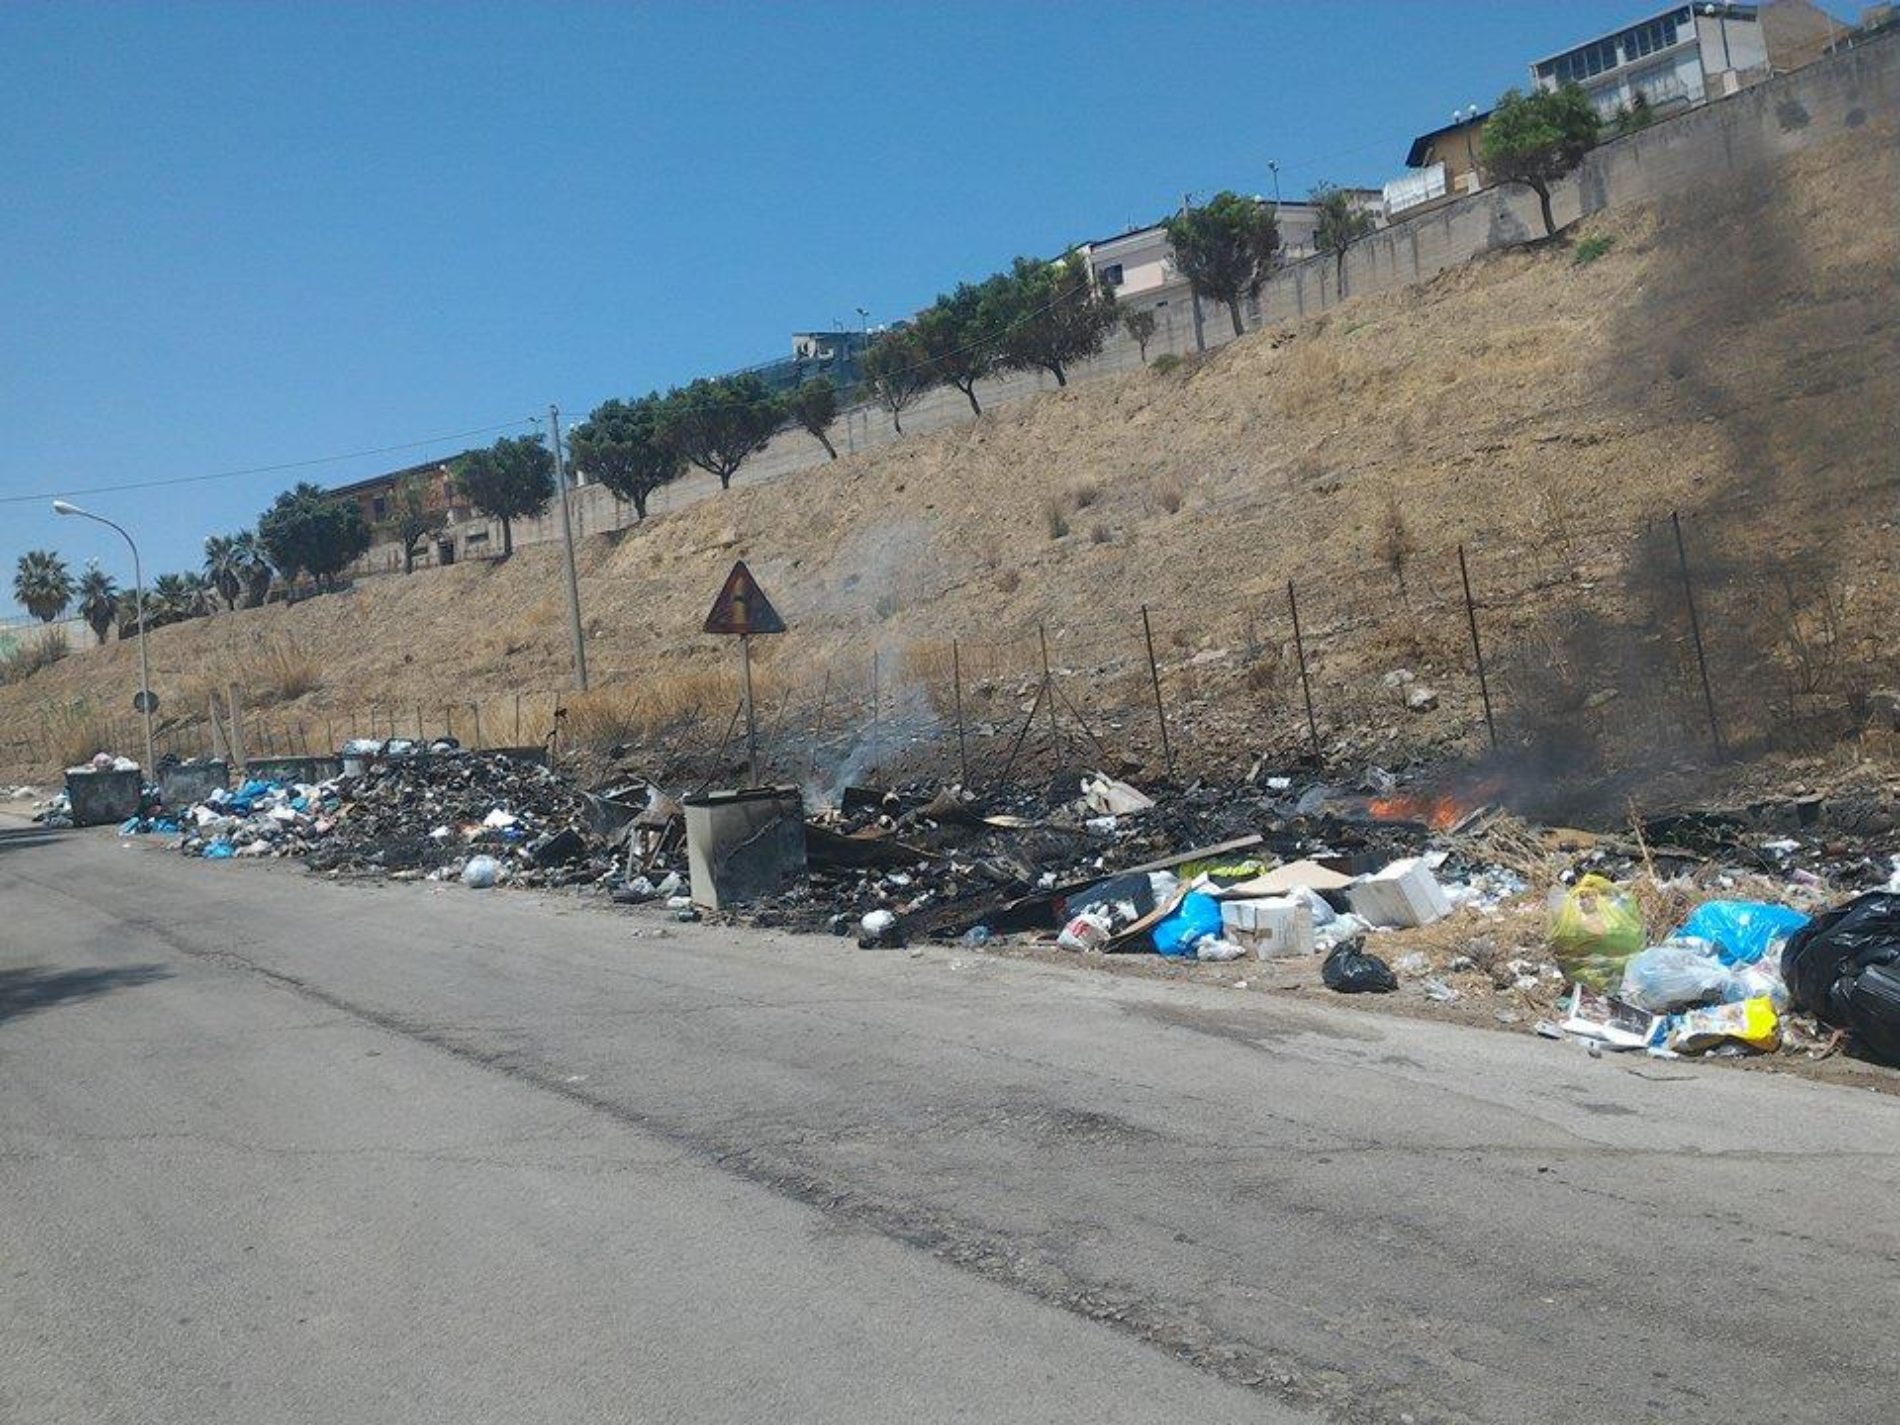 Lettera aperta sui rifiuti andati a fuoco in contrada Sottoserra.